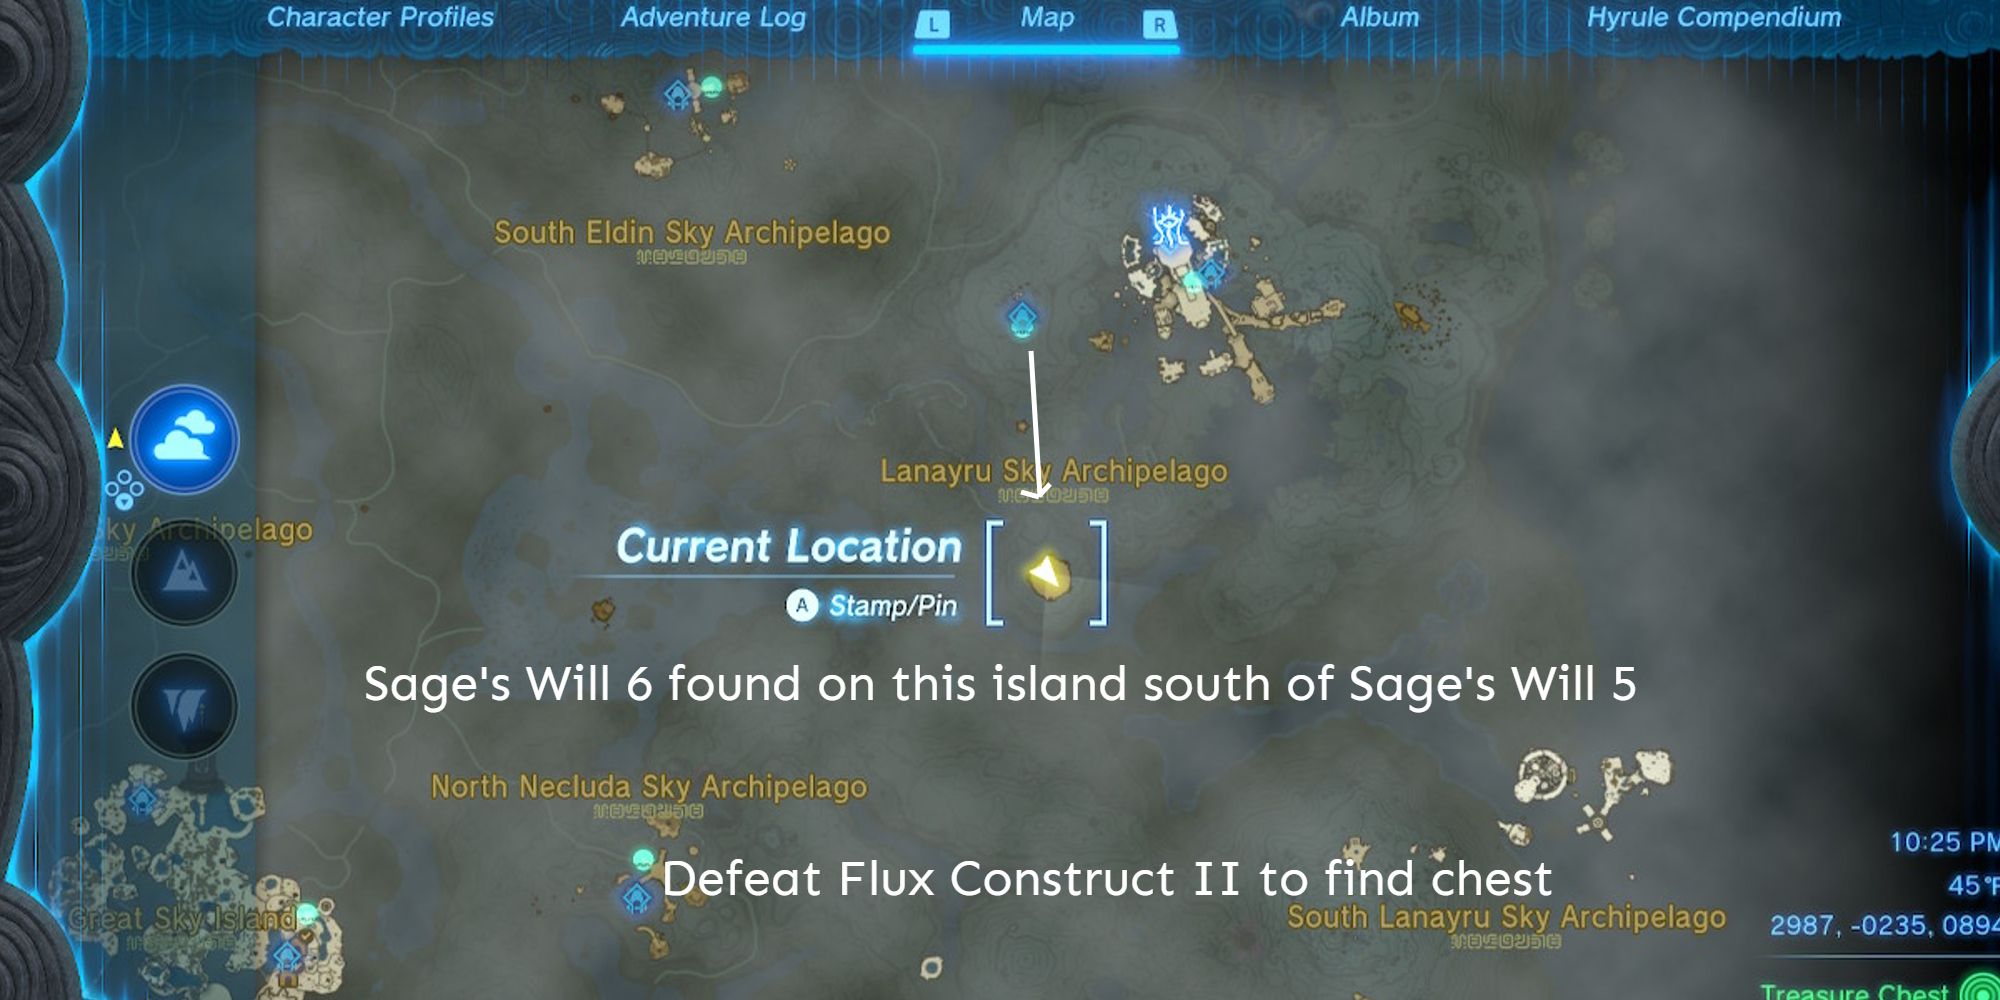 TotK-Sage-Will-Lanayru-2-Map